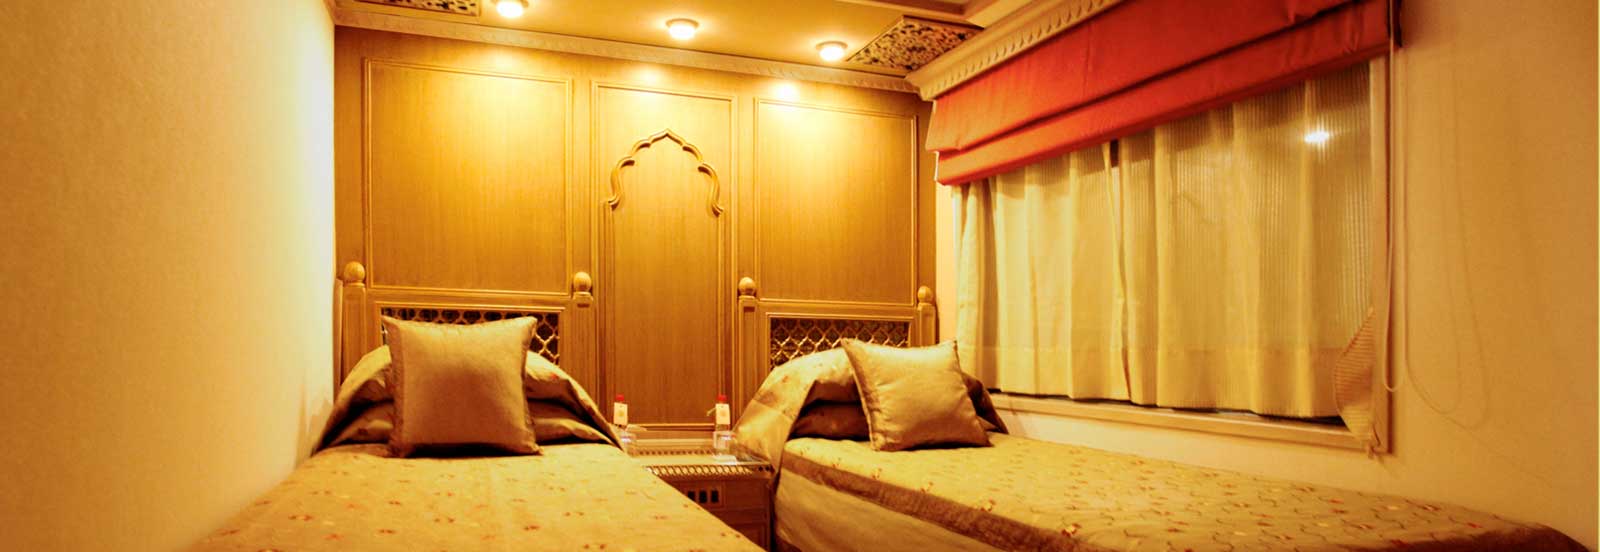 maharajas-express-presidential-suite-luxury-bedroom